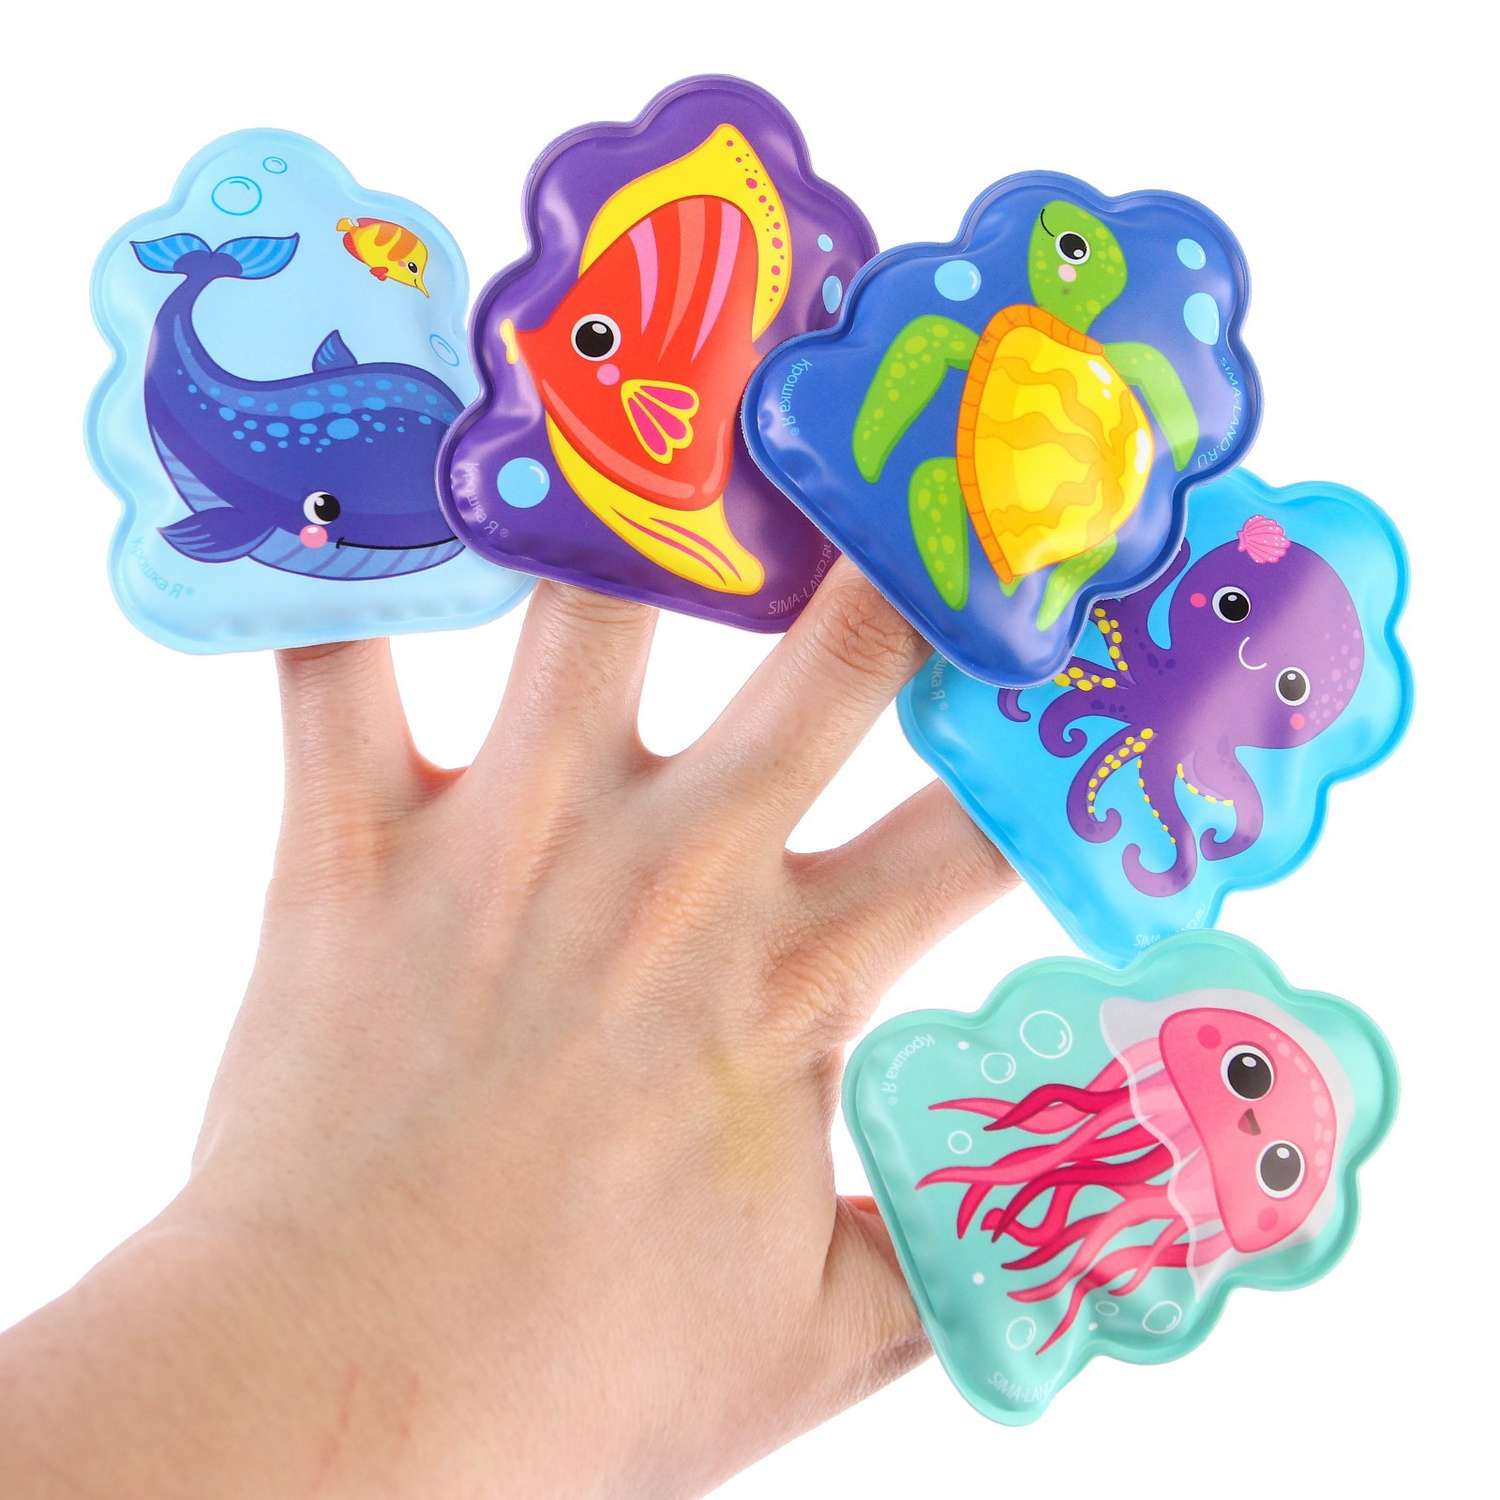 Набор Крошка Я игрушек для ванной купания «Подводный мир»: книжка непромакашка и пальчиковый театр - фото 1